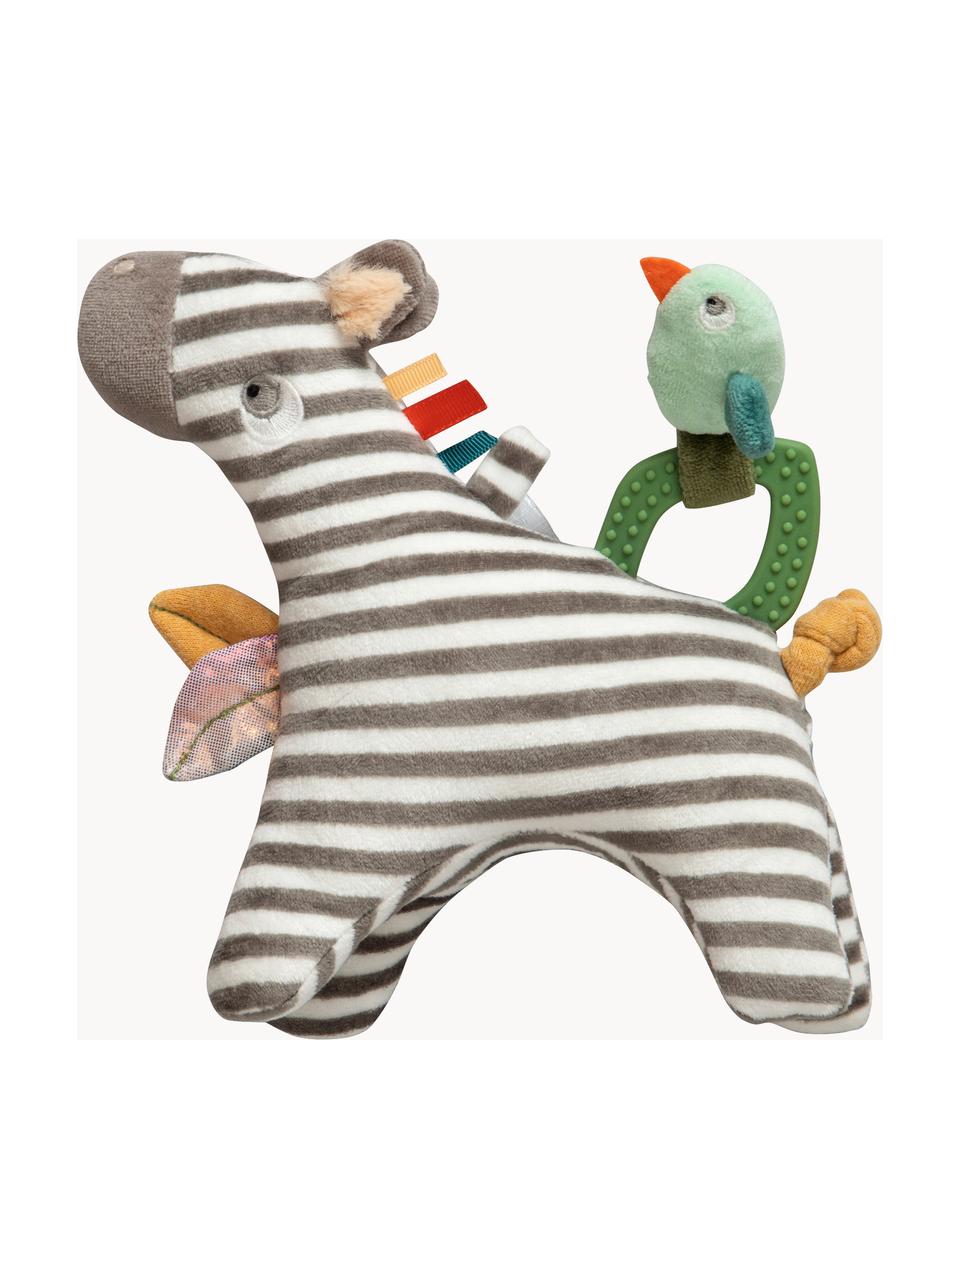 Activiteit speeltje Zapp the Zebra, Bekleding: 100% polyester, Grijs, meerkleurig, B 19 x H 21 cm